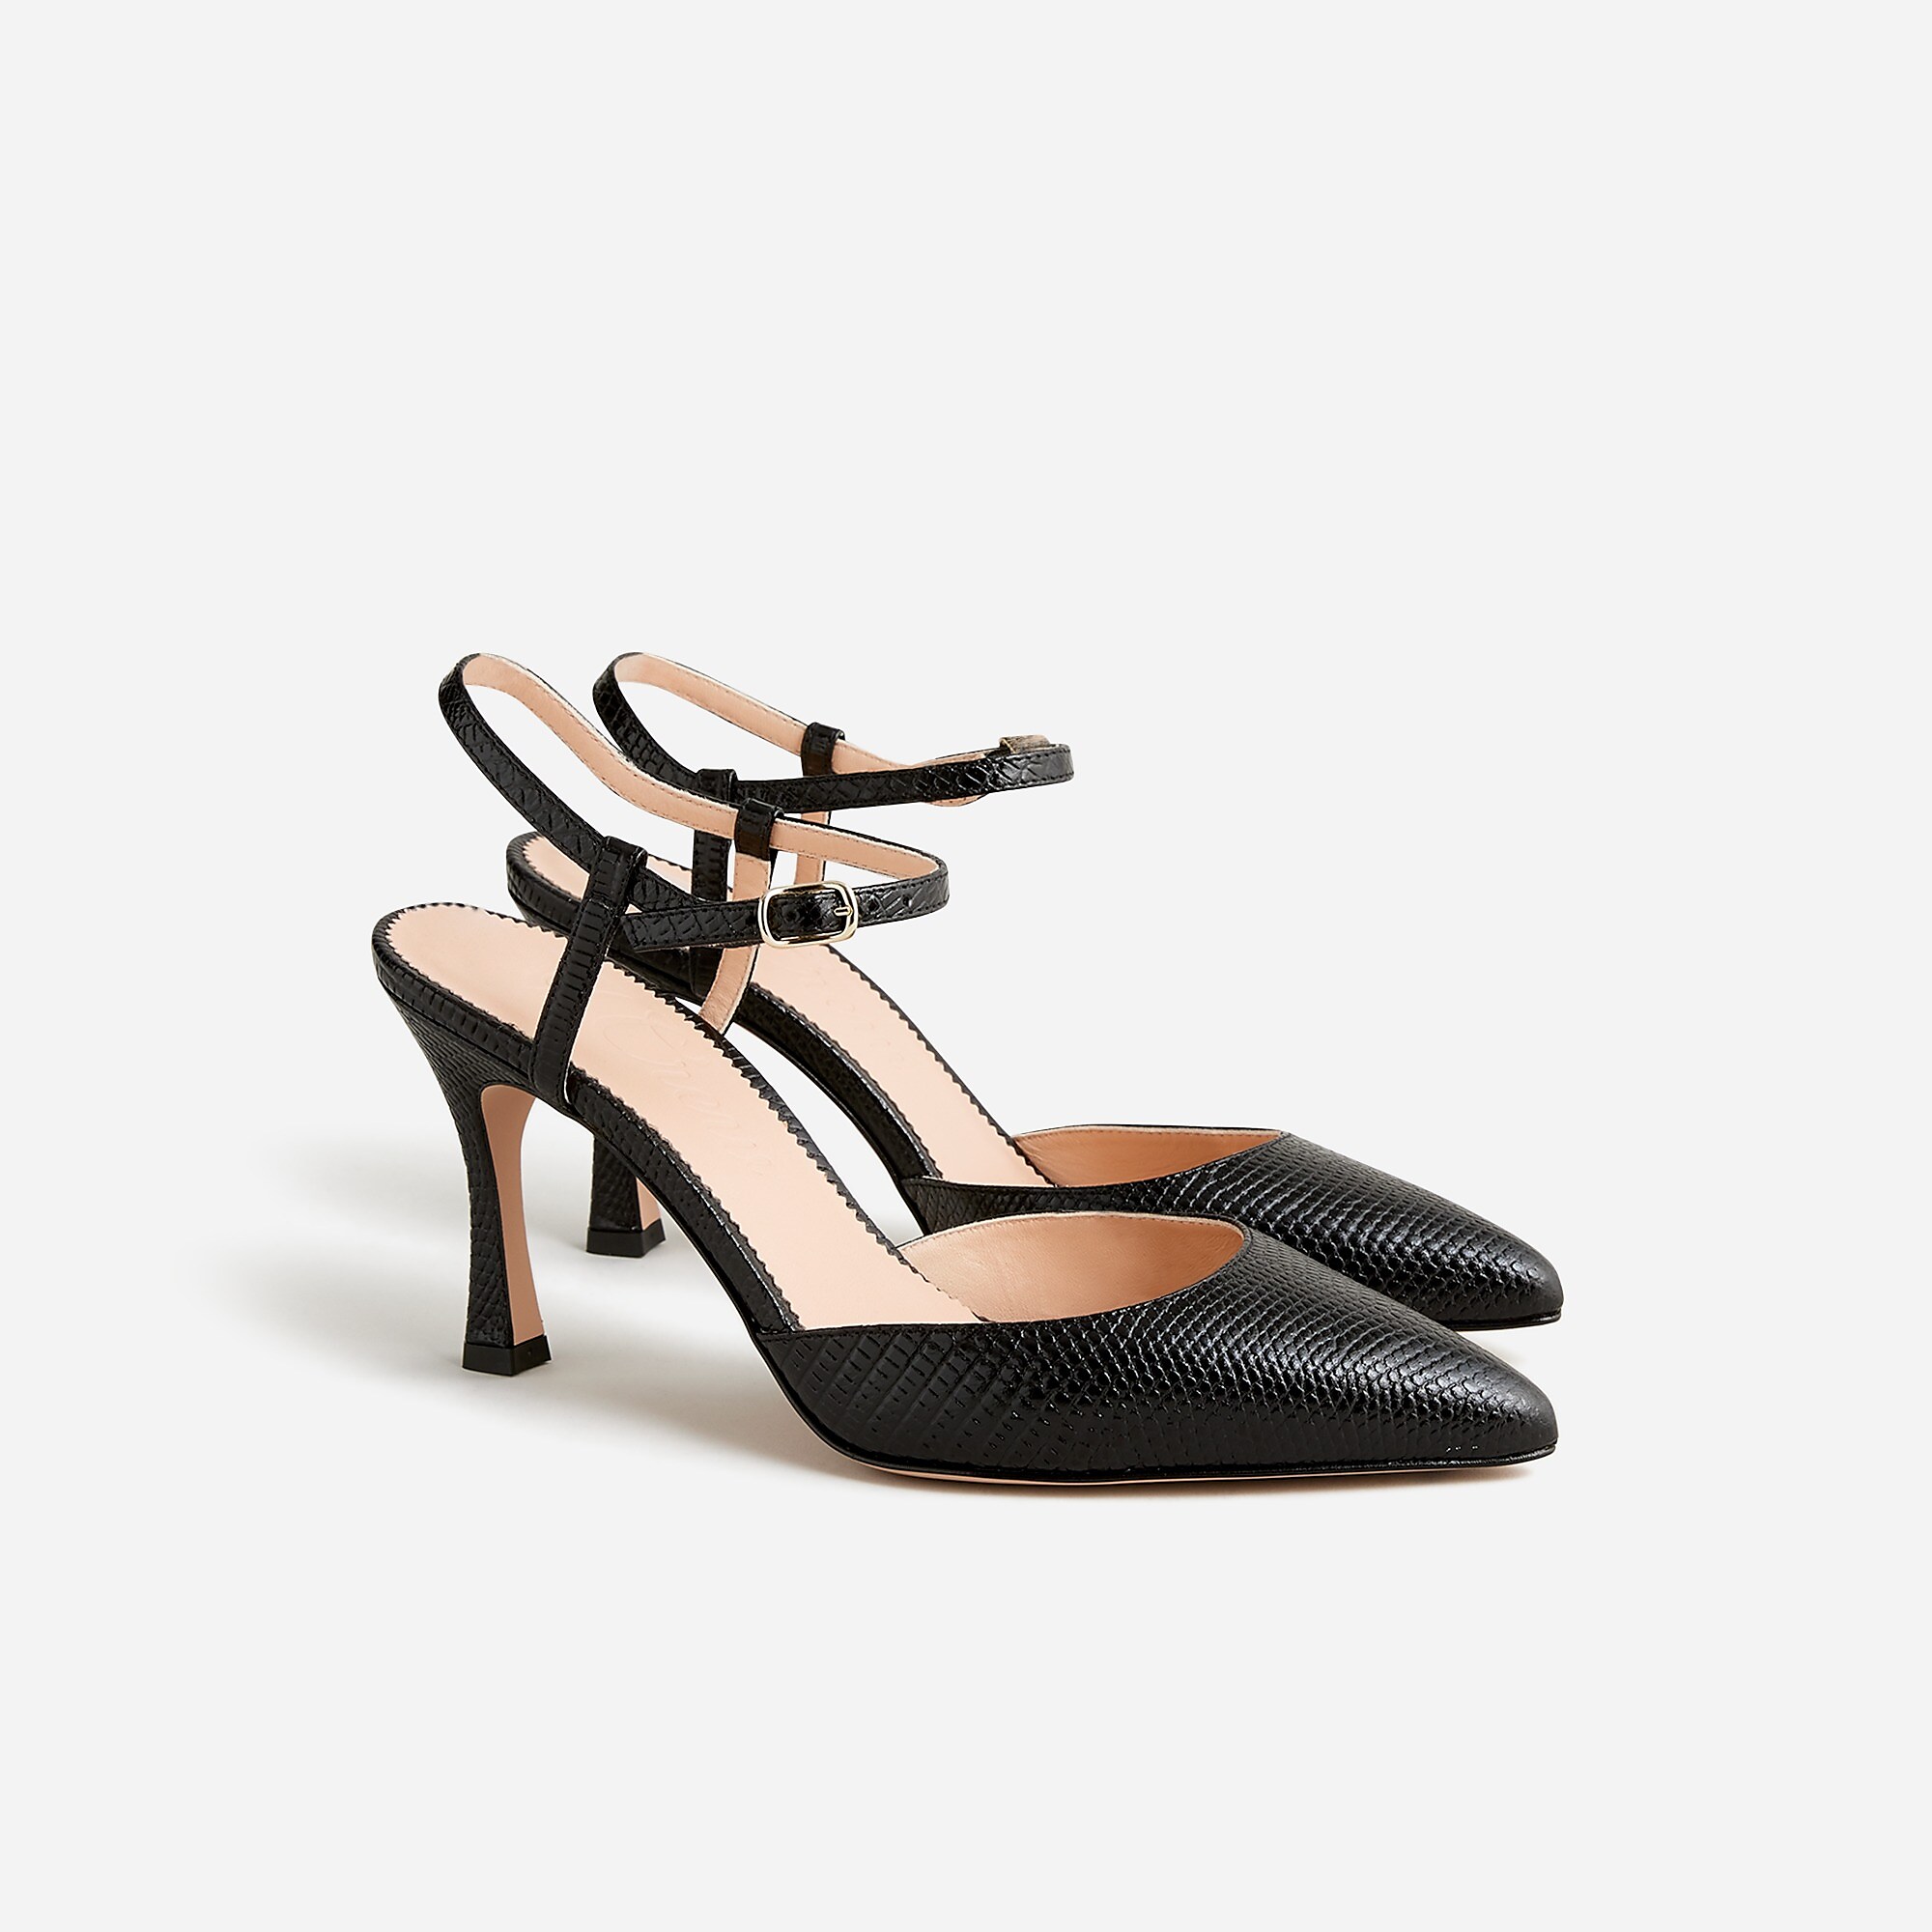 Elsie Made-in-Italy lizard-embossed leather heels
